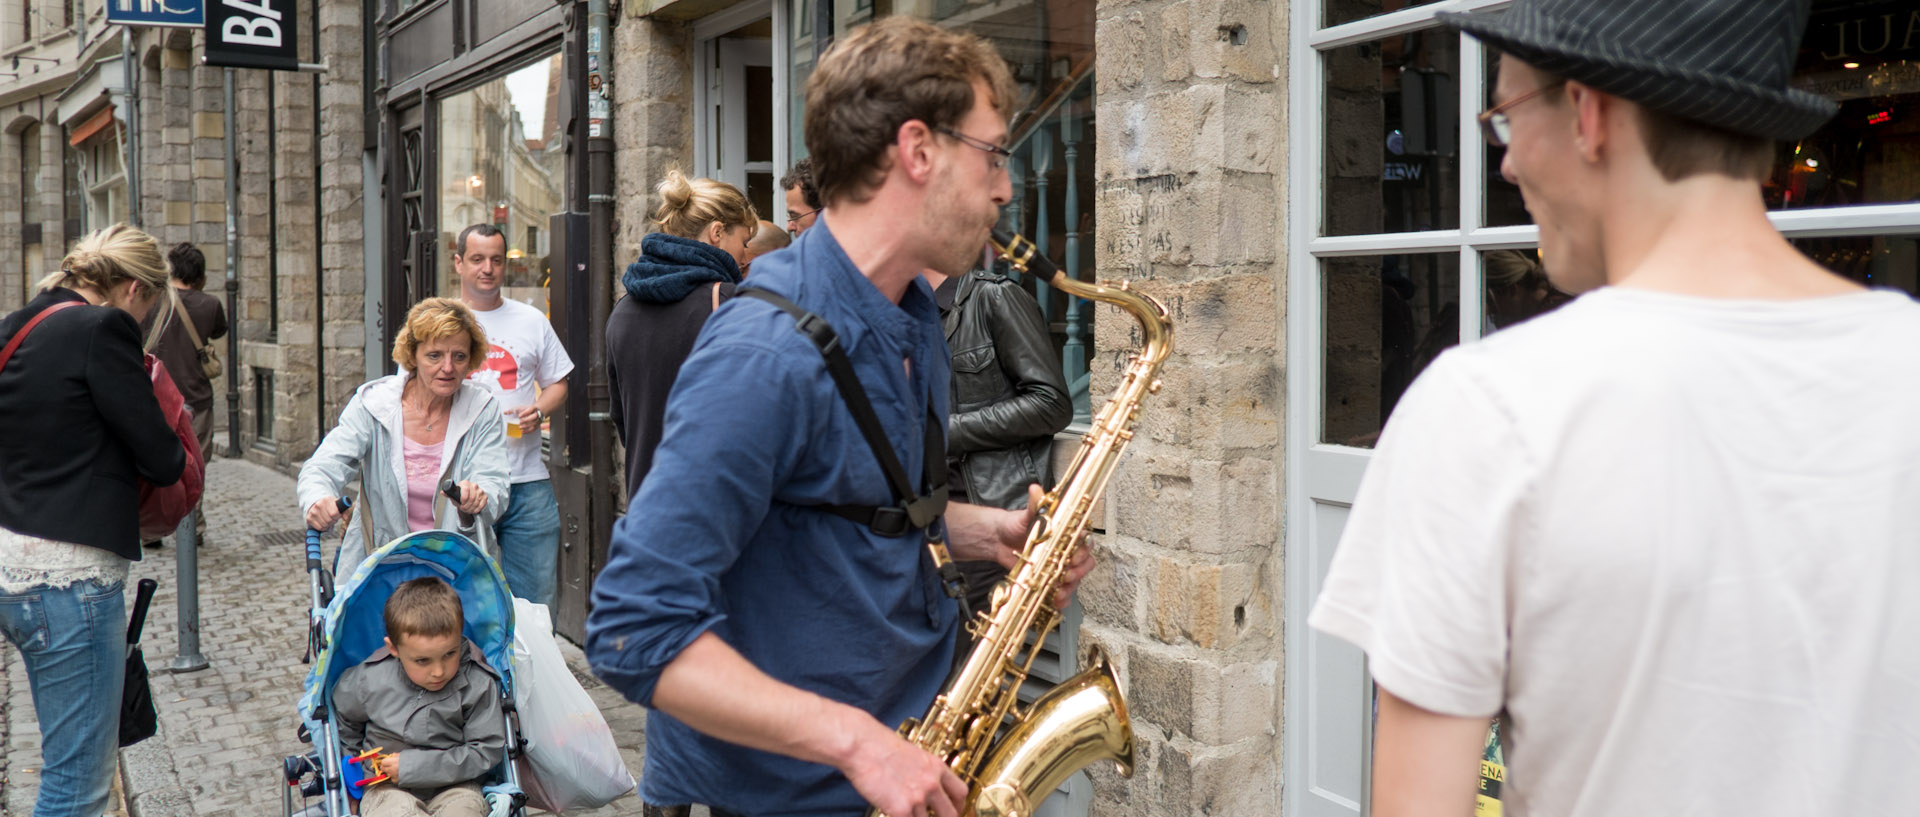 Saxophoniste pendant la Fête de la musique, rue Lepelletier, à Lille.